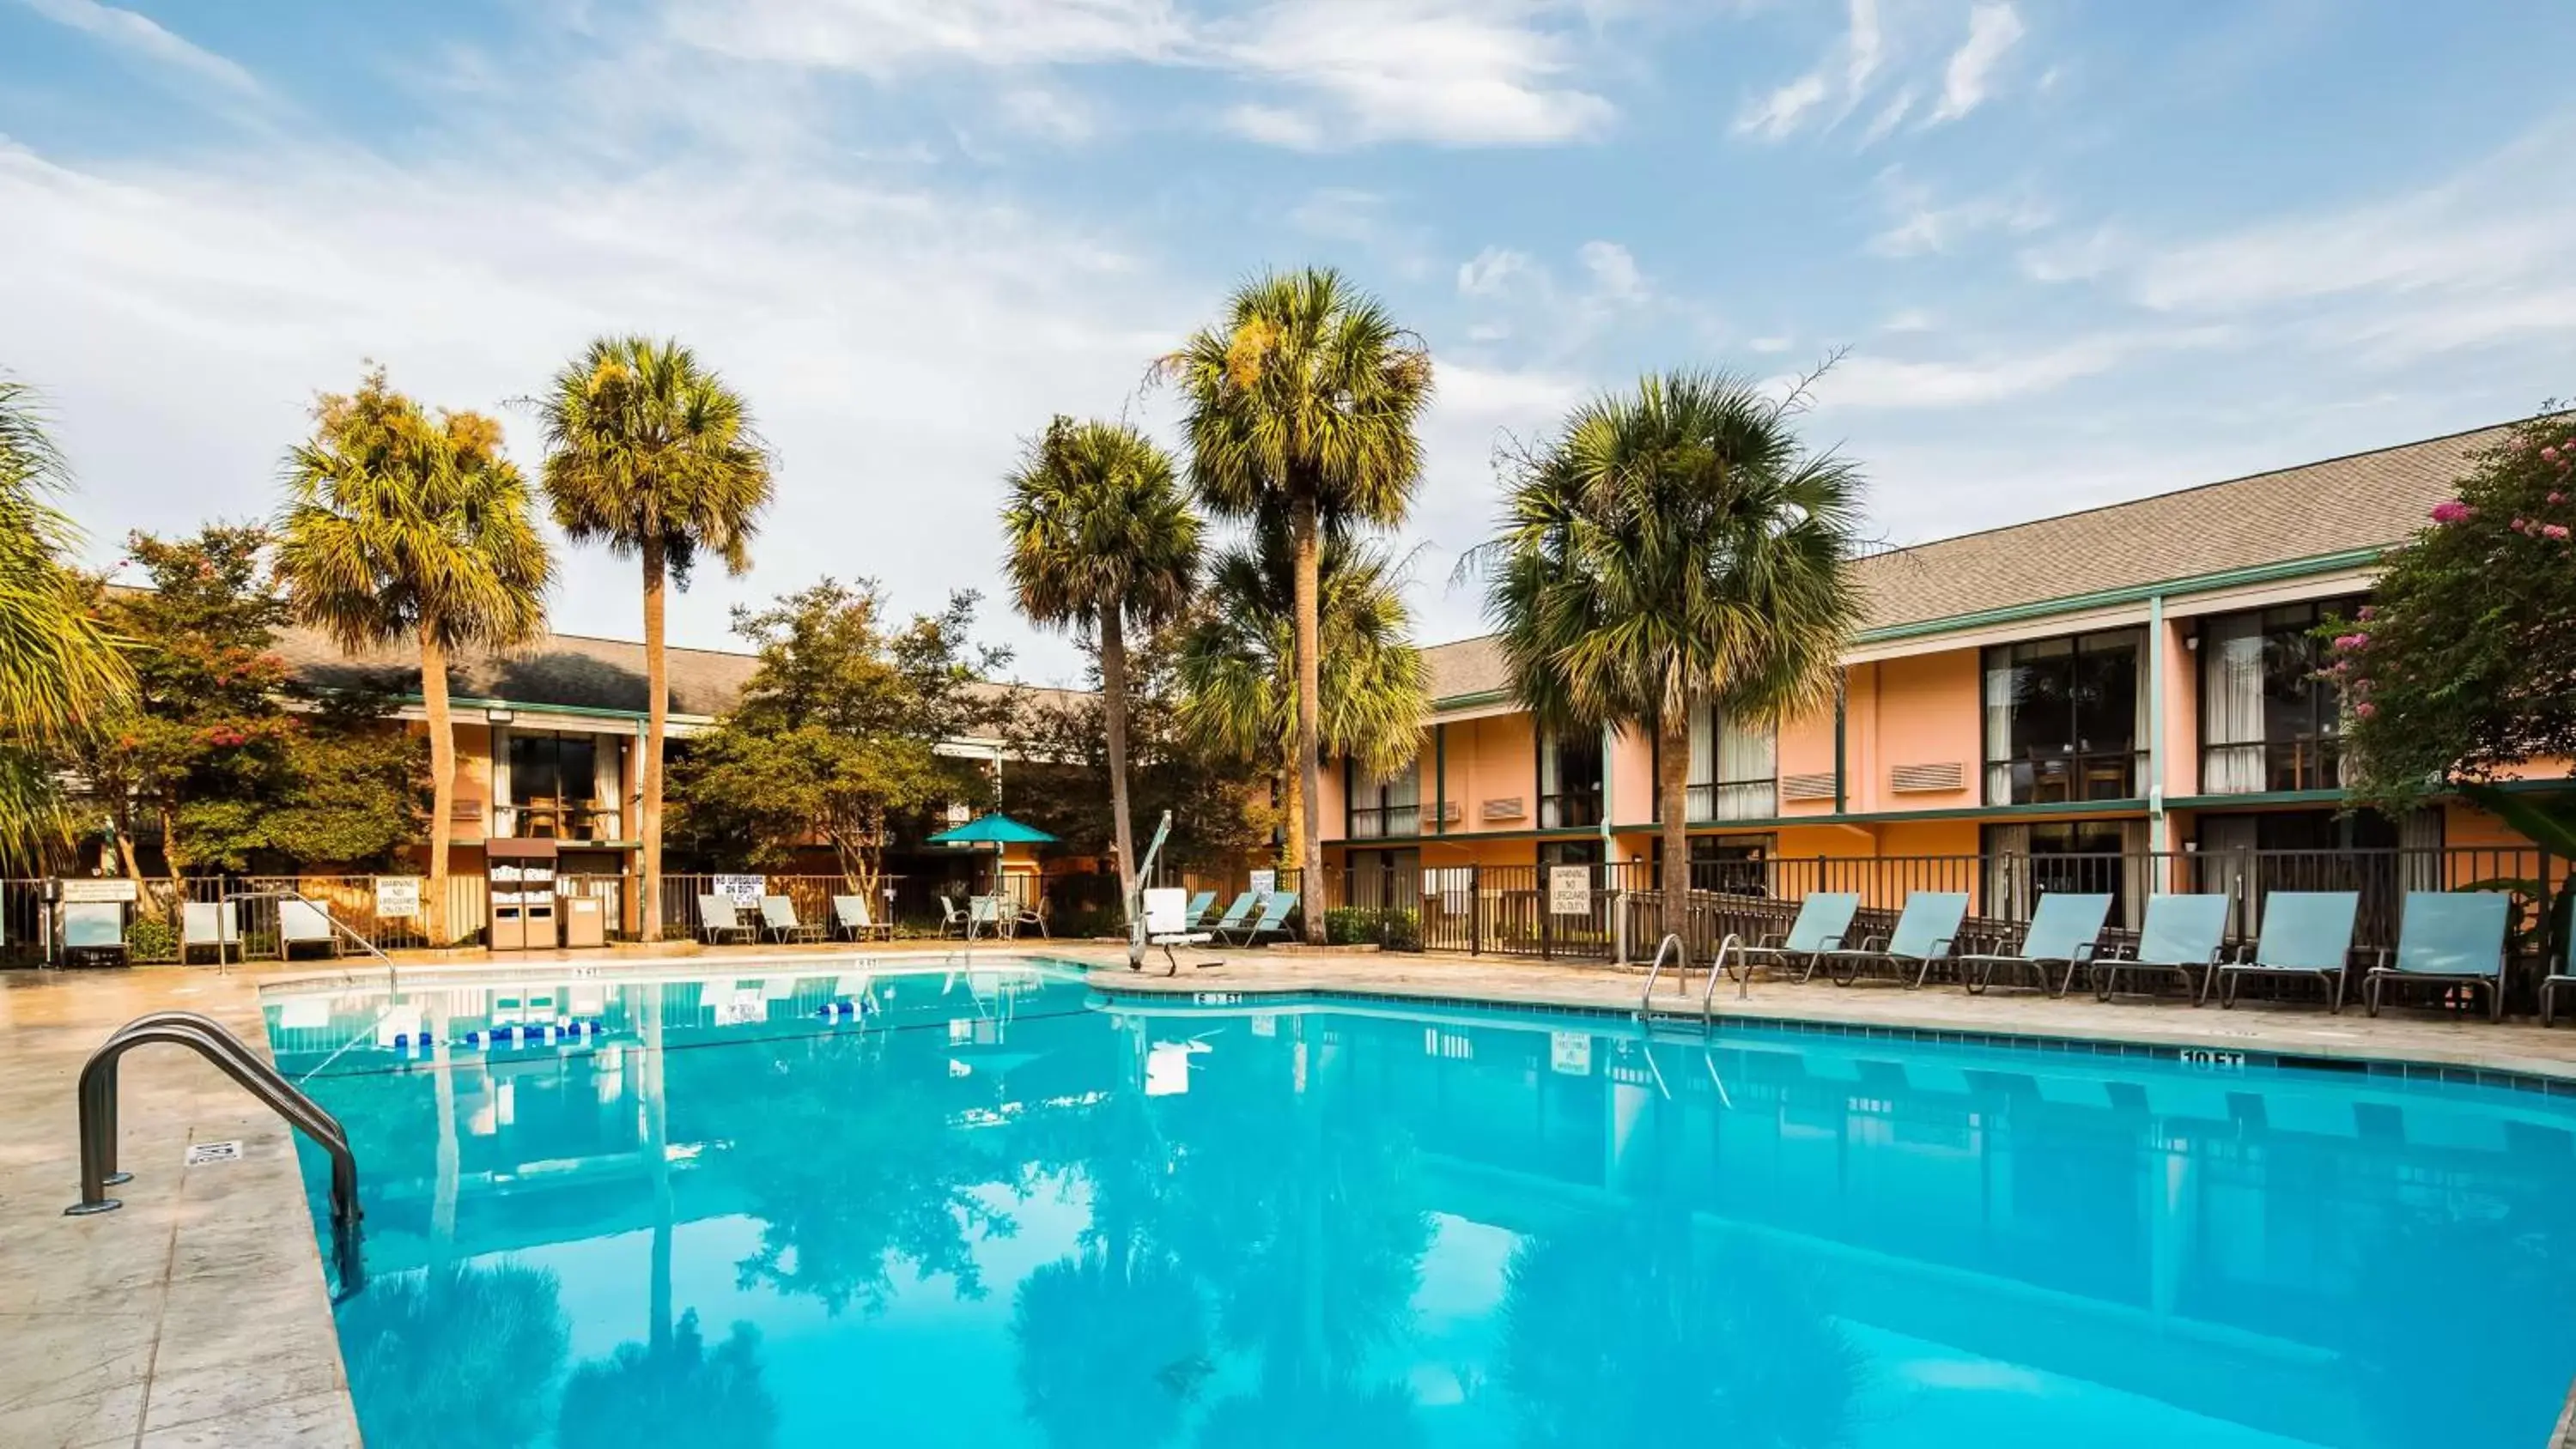 On site, Swimming Pool in Best Western Charleston Inn